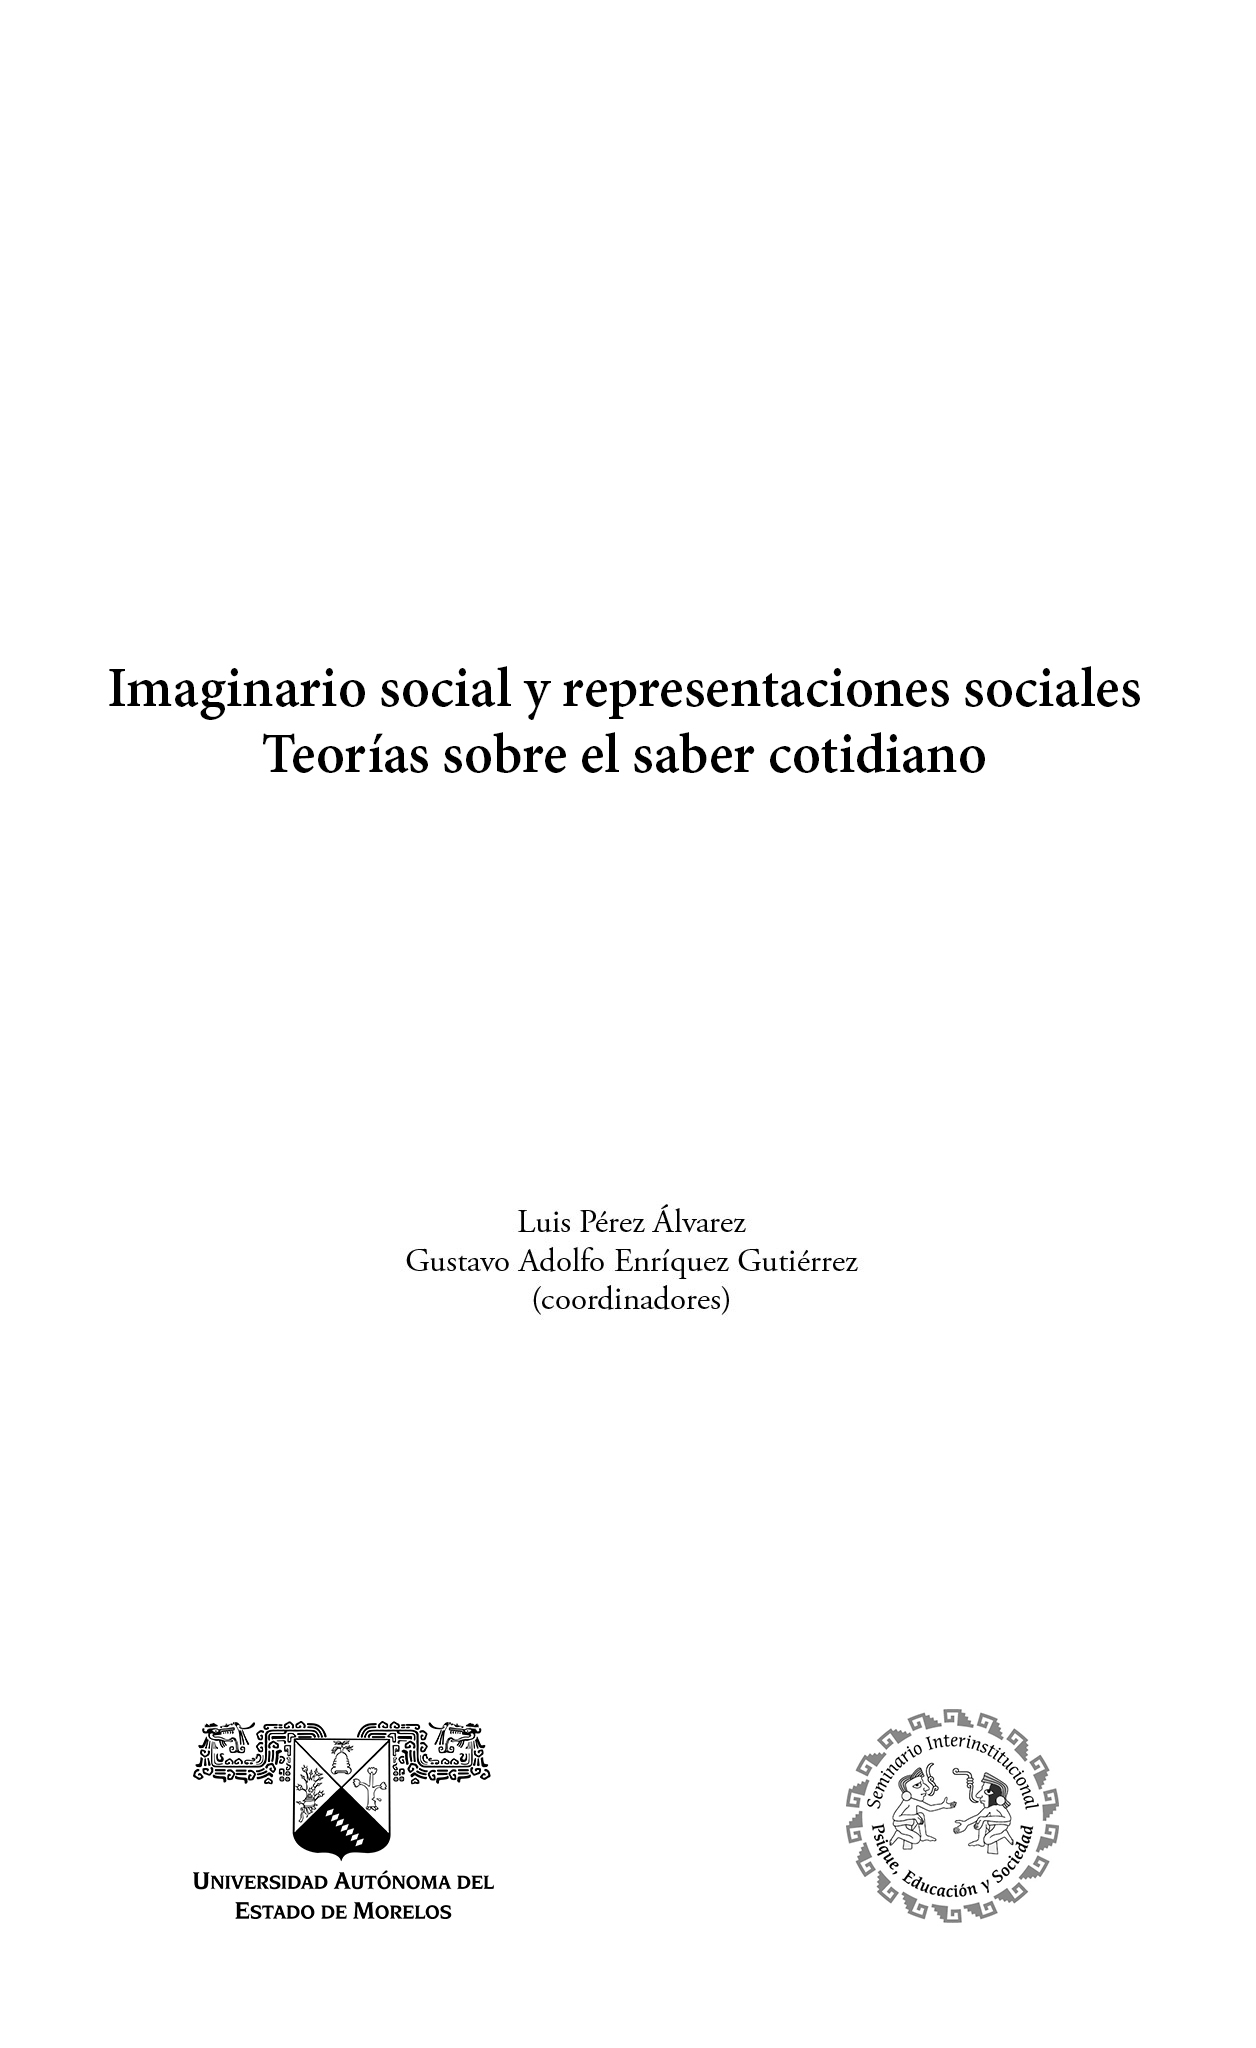 Cornelius Castoriadis y las significaciones imaginarias sociales Luis Pérez - photo 2